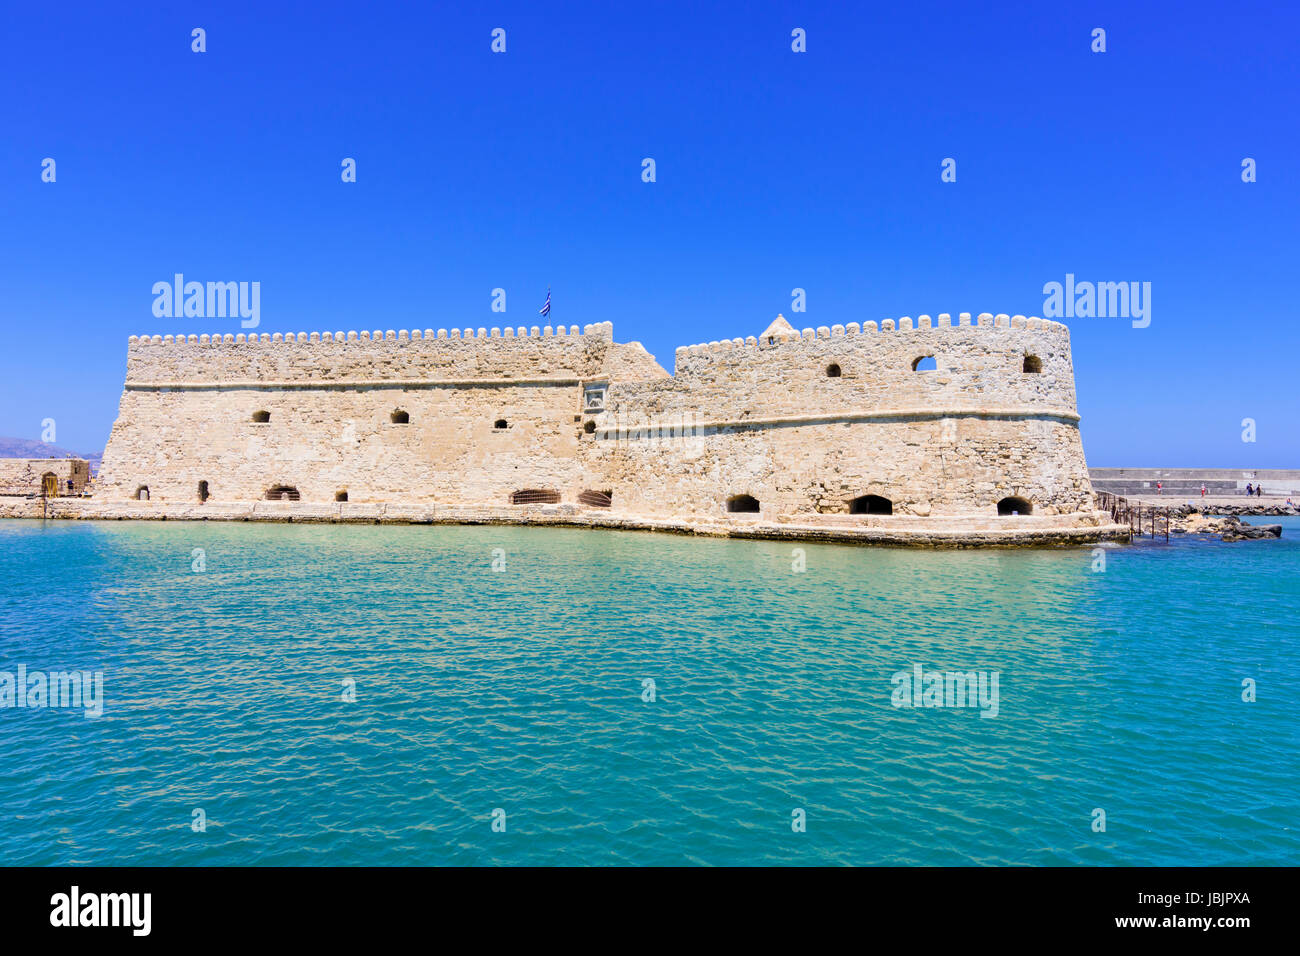 Die venezianische Burg Iraklion, bekannt als der Koules Festung am Eingang zum alten Hafen von Heraklion, Kreta, Griechenland Stockfoto